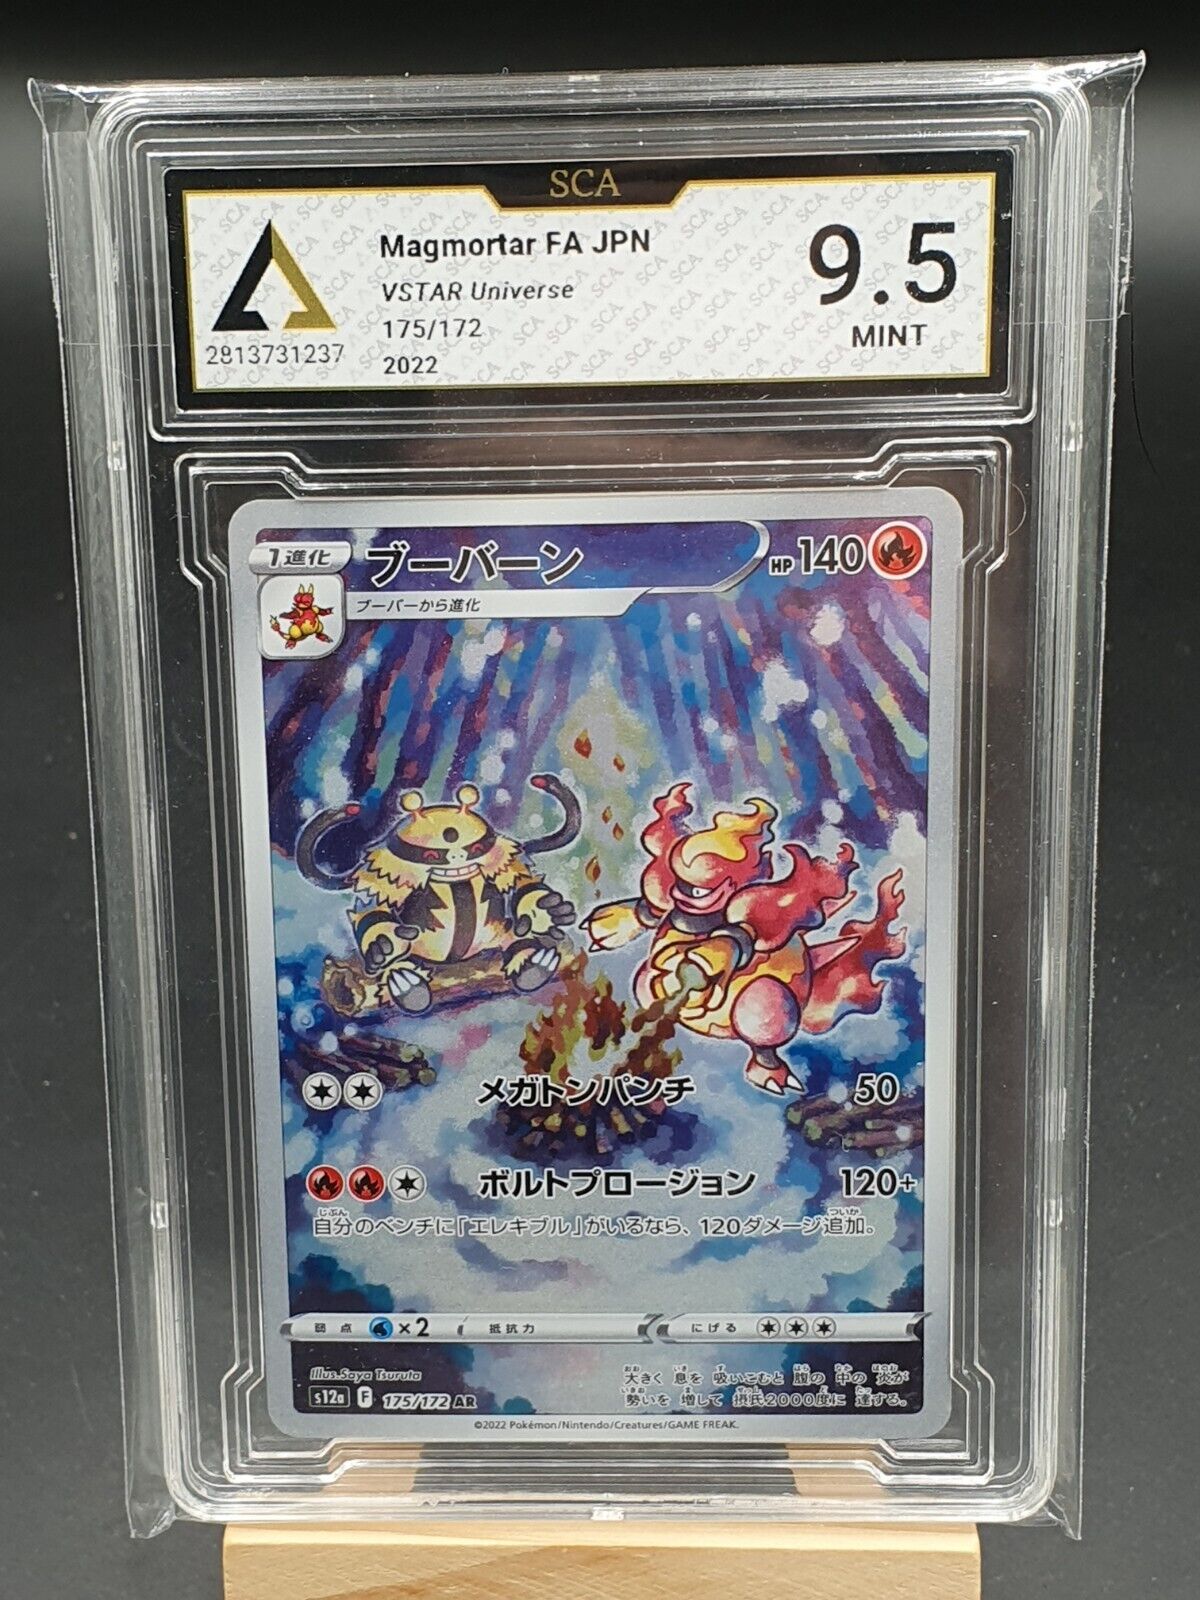 Maganon Japanese Card - Magmortar AR 175/172 s12a - VSTAR Universe SCA 10 PC